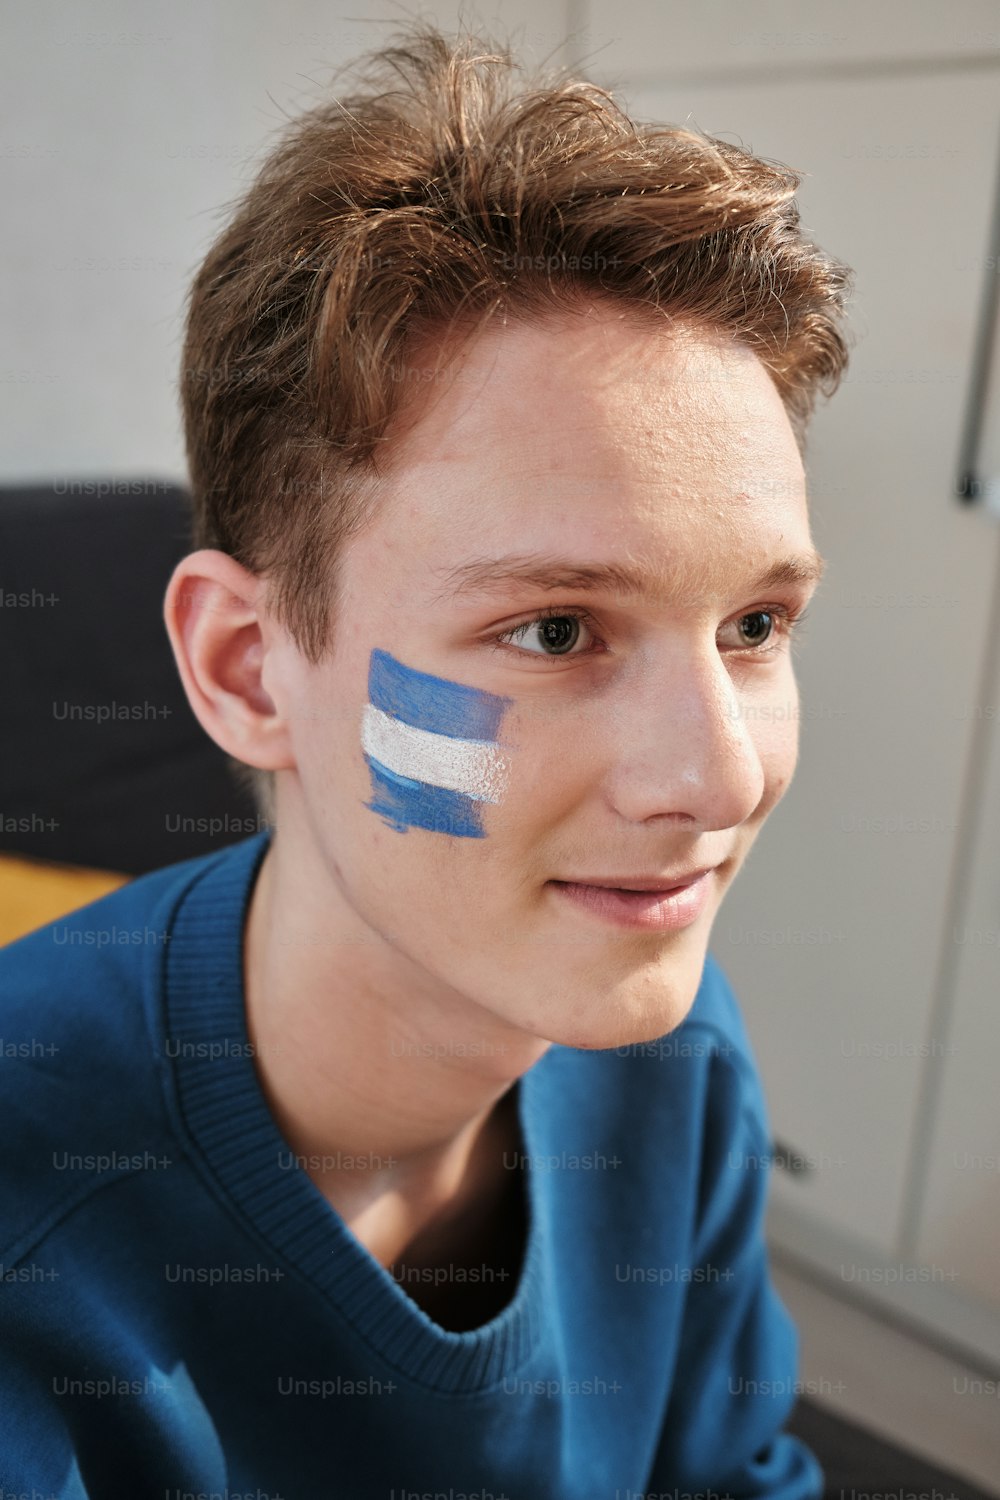 Un joven con una bandera pintada en la cara